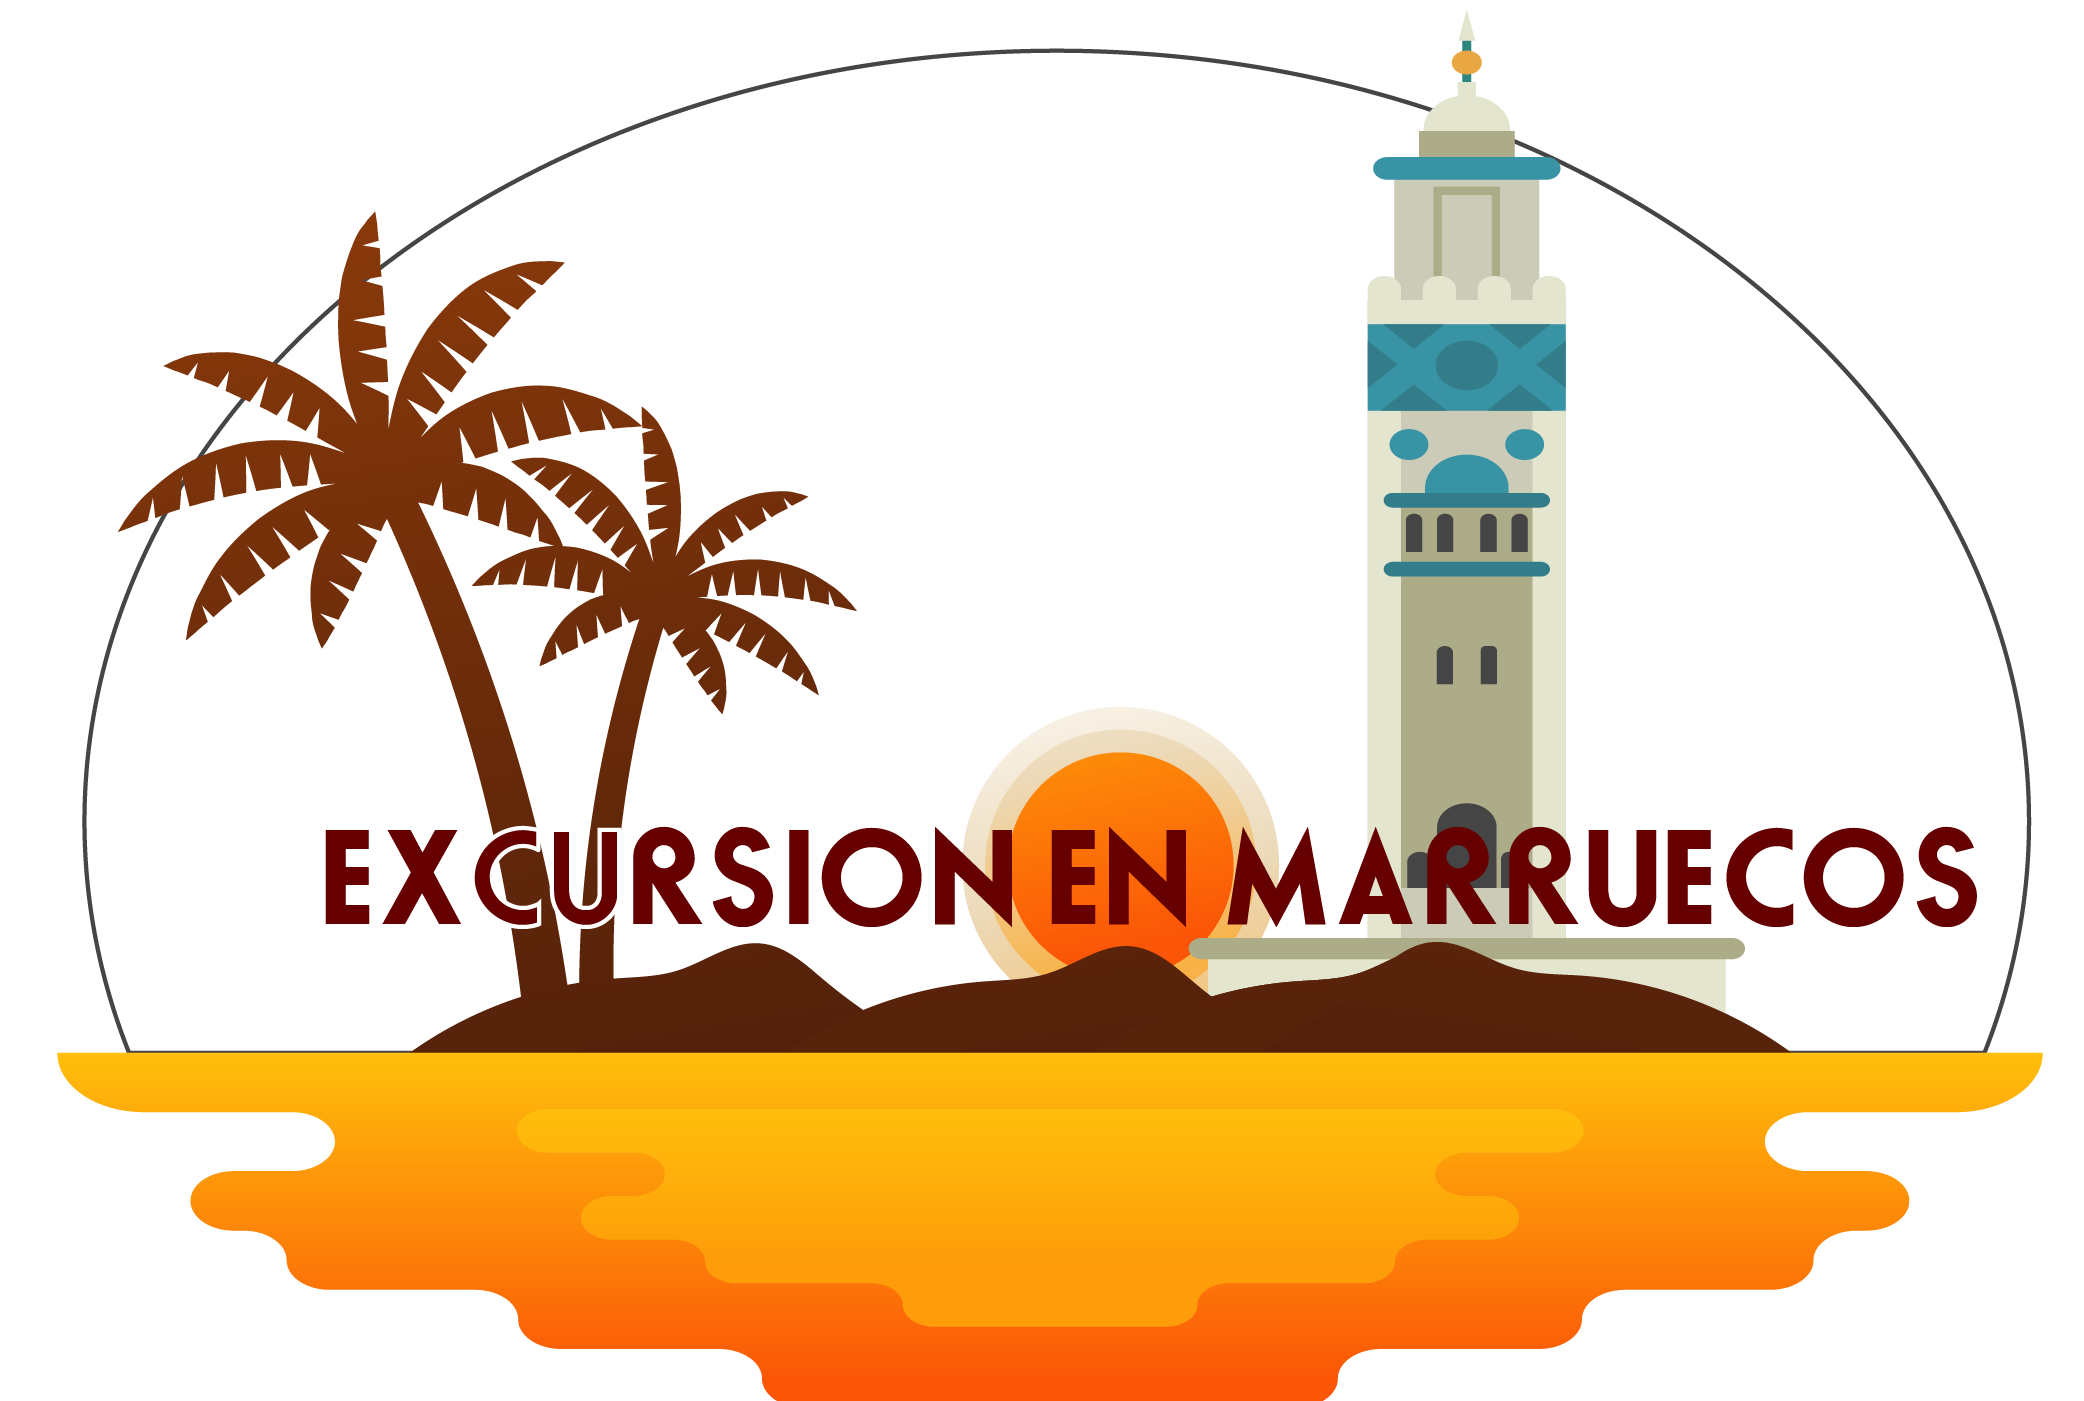 Excursion en Marruecos